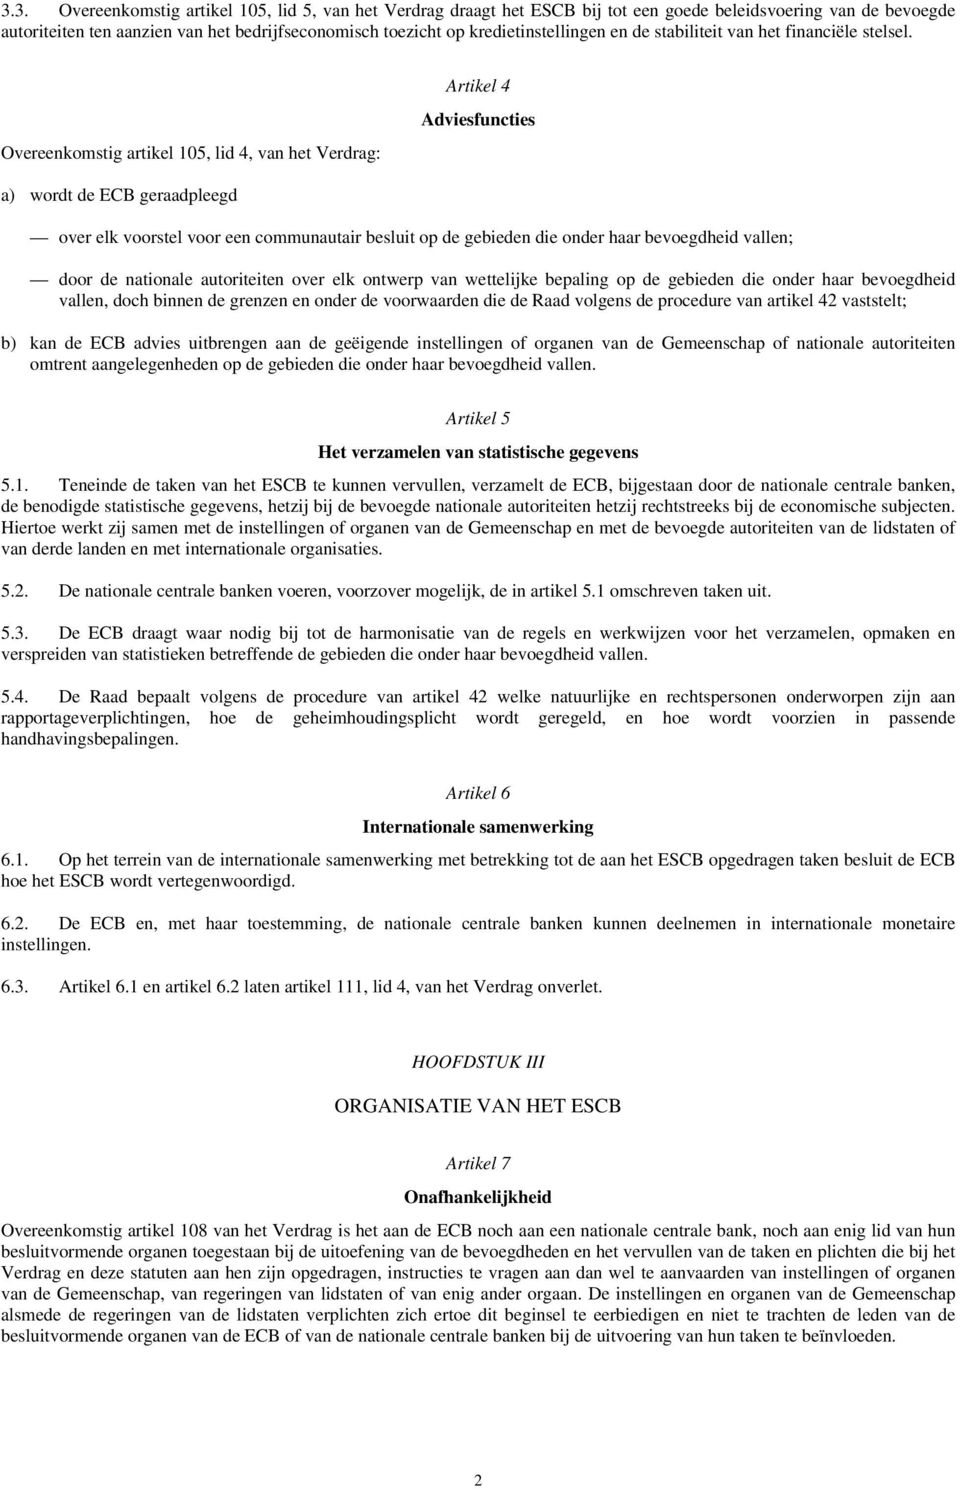 Overeenkomstig artikel 105, lid 4, van het Verdrag: Artikel 4 Adviesfuncties a) wordt de ECB geraadpleegd over elk voorstel voor een communautair besluit op de gebieden die onder haar bevoegdheid